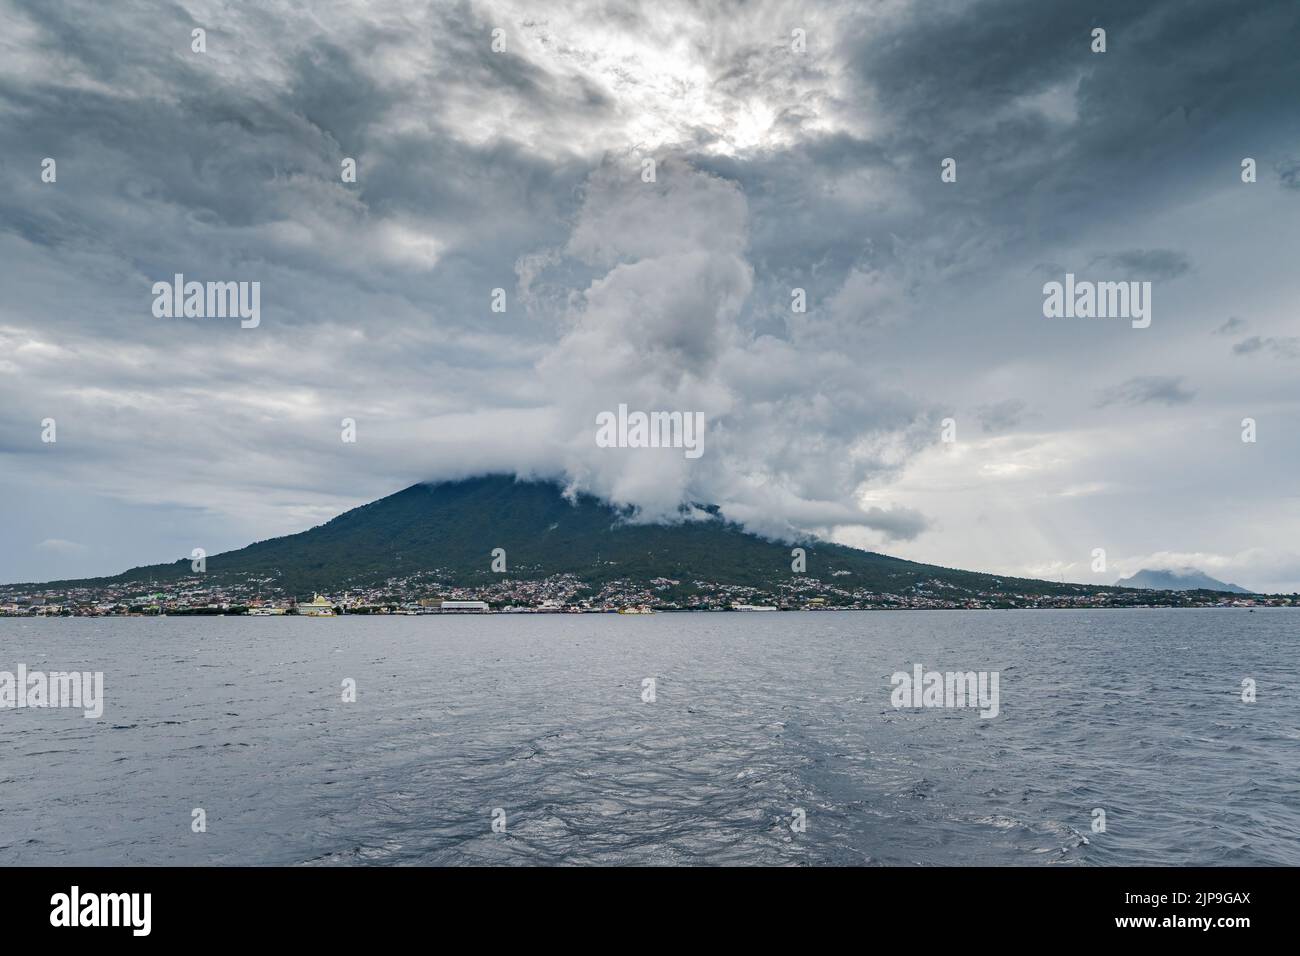 Kota Ternate est situé sur la pente d'un volcan actif. Île Ternate, Indonésie. Banque D'Images